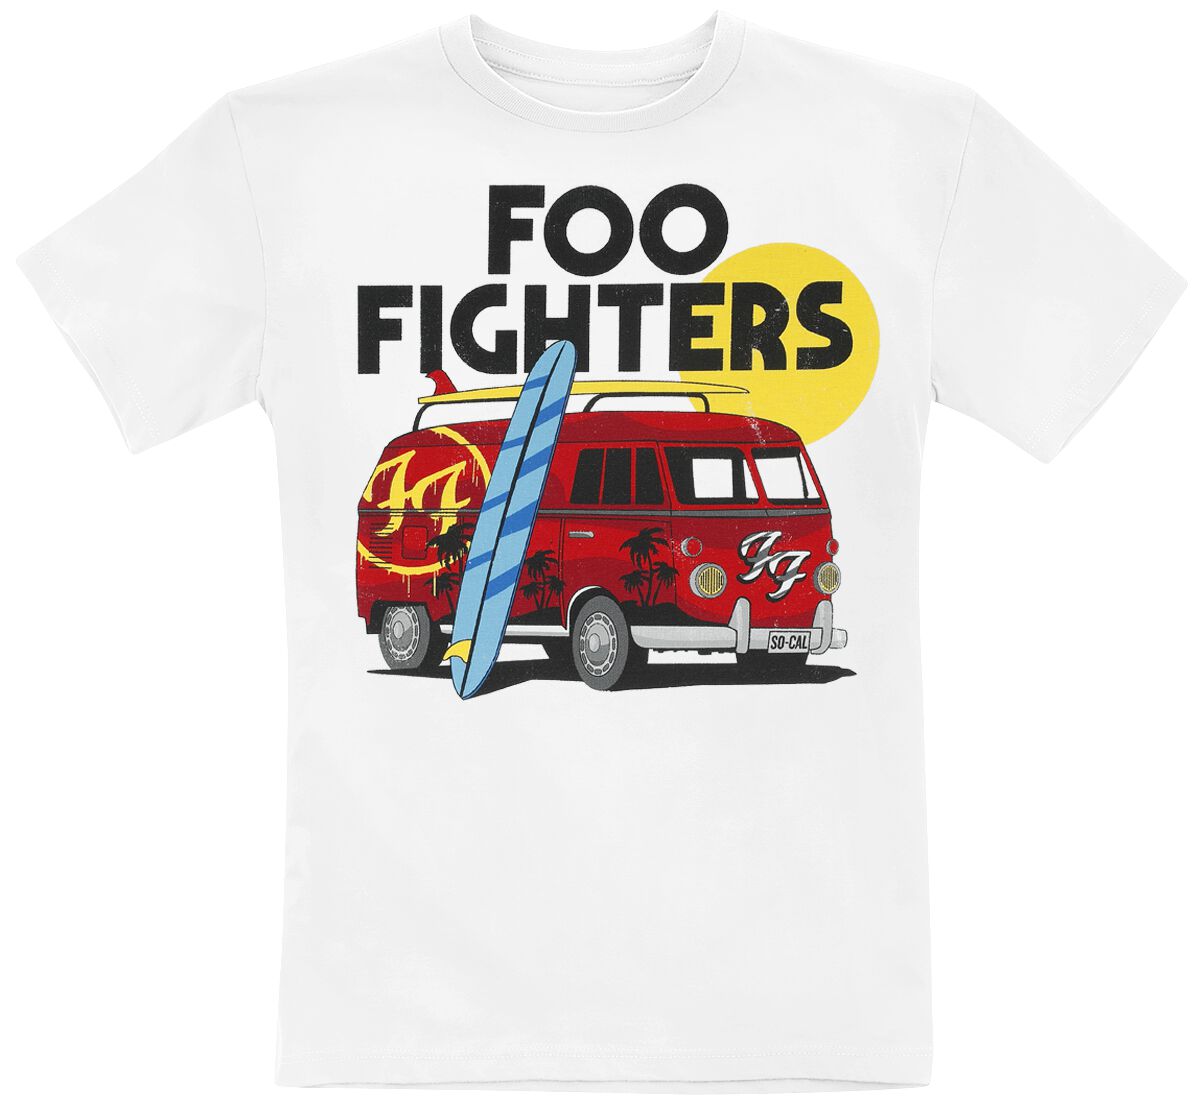 Foo Fighters T-Shirt für Kinder - Kids  - Van - für Mädchen & Jungen - weiß  - Lizenziertes Merchandise!